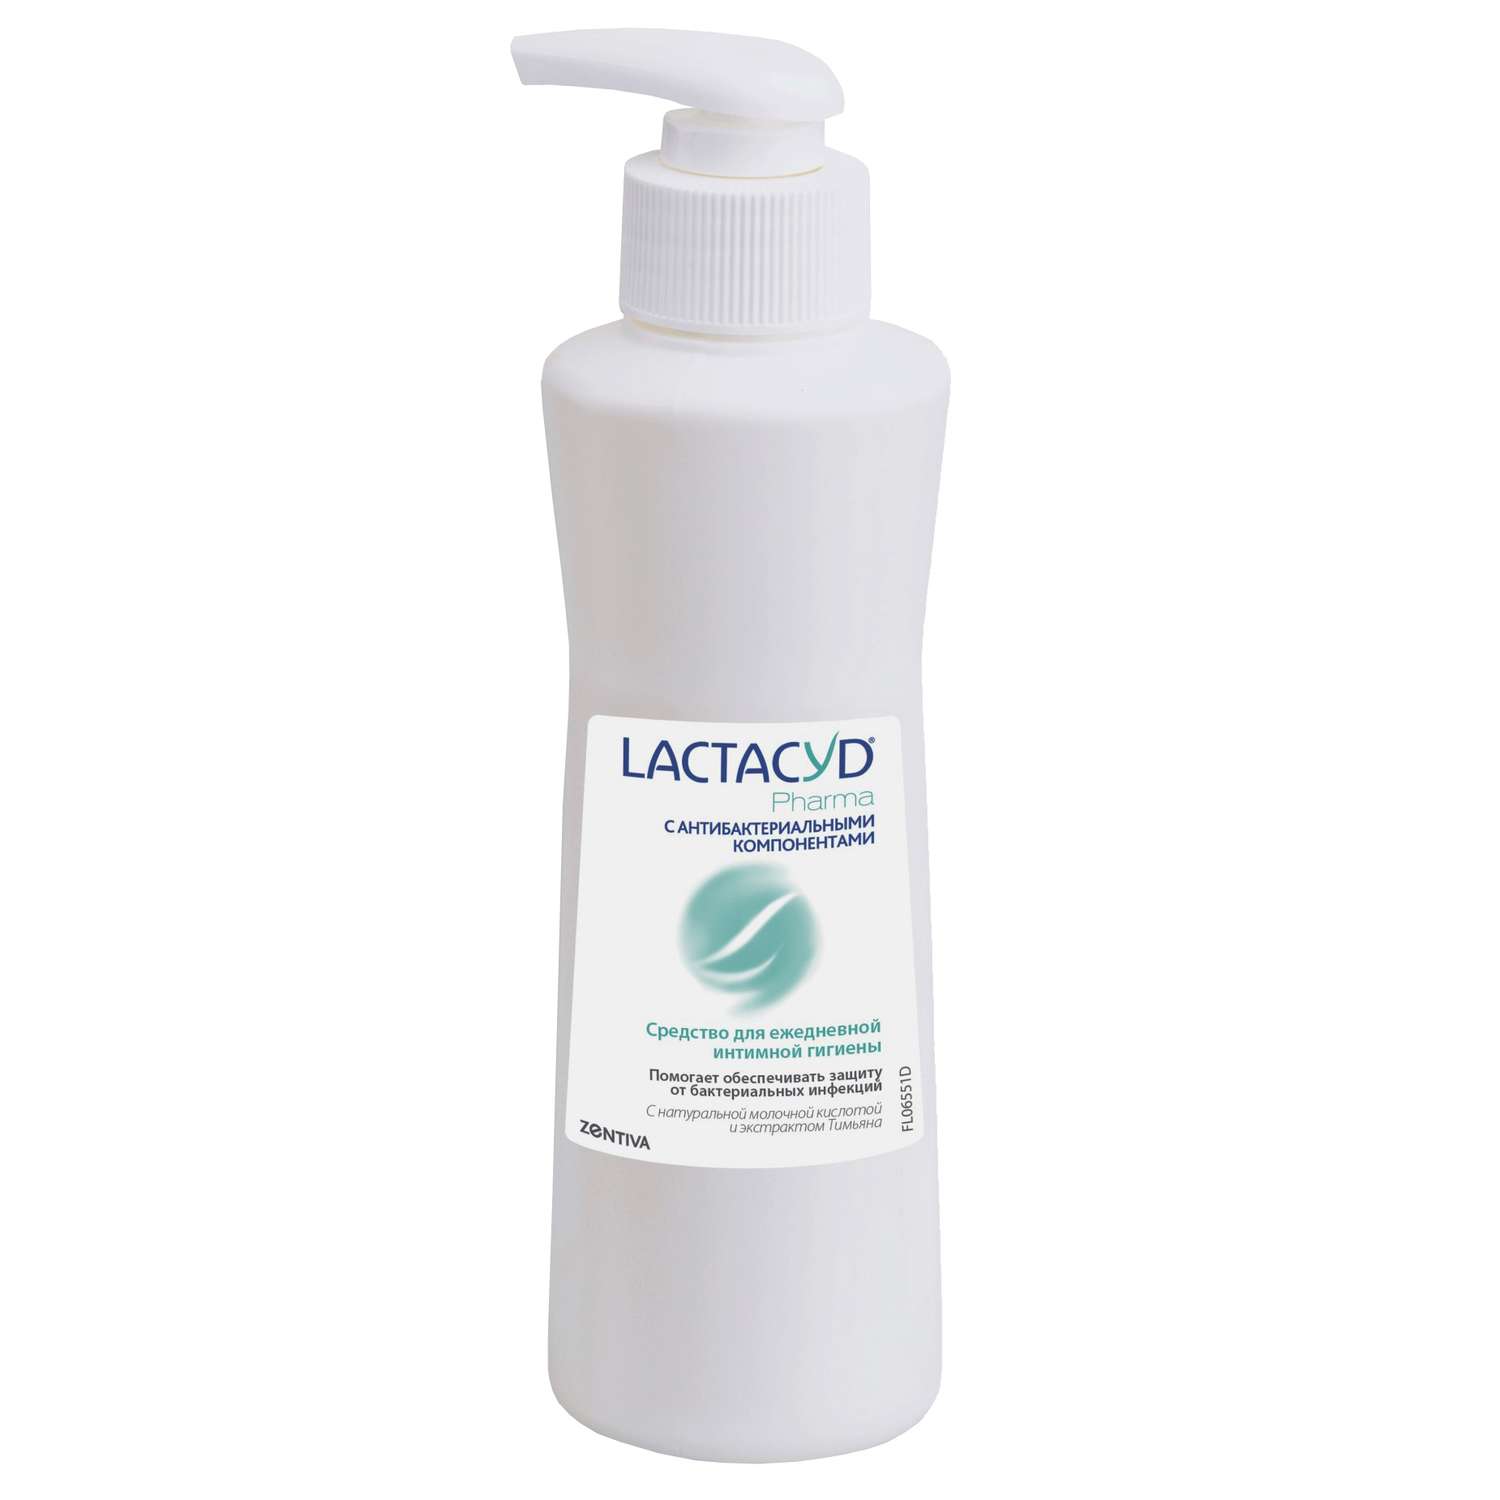 Средство для интимной гигиены Lactacyd Pharma c антибактериальными компонентами 250мл - фото 3